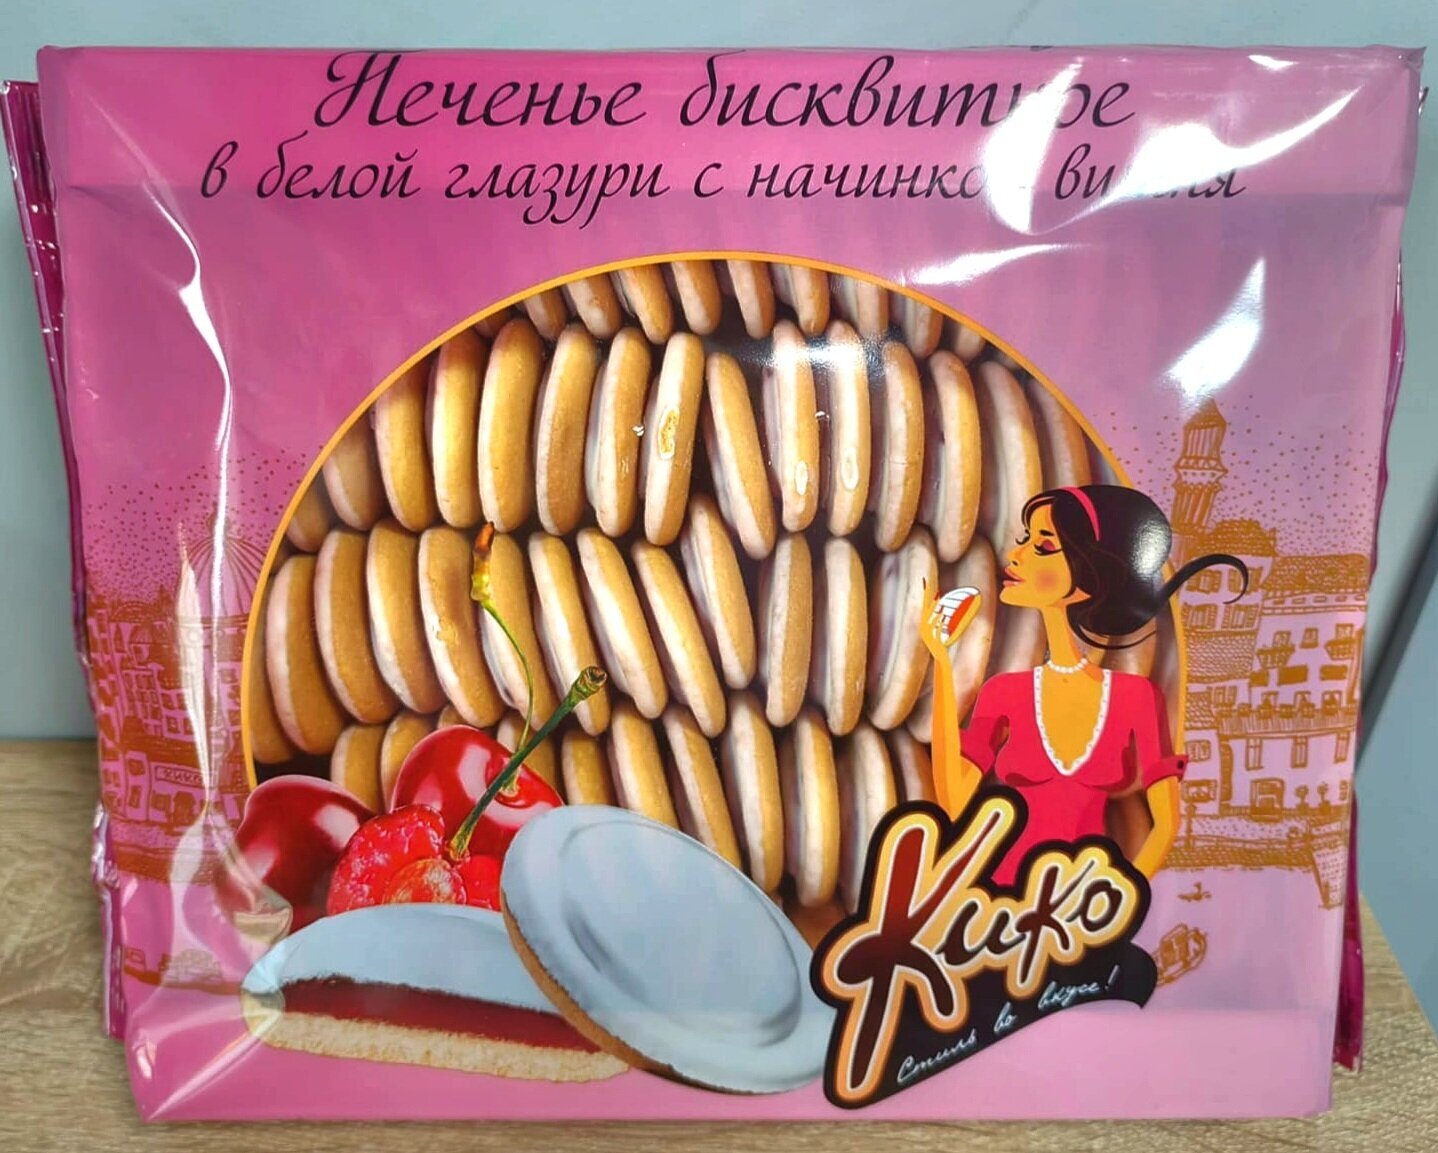 Печенье бисквитное в белой глазури с начинкой вишня - фотография № 1